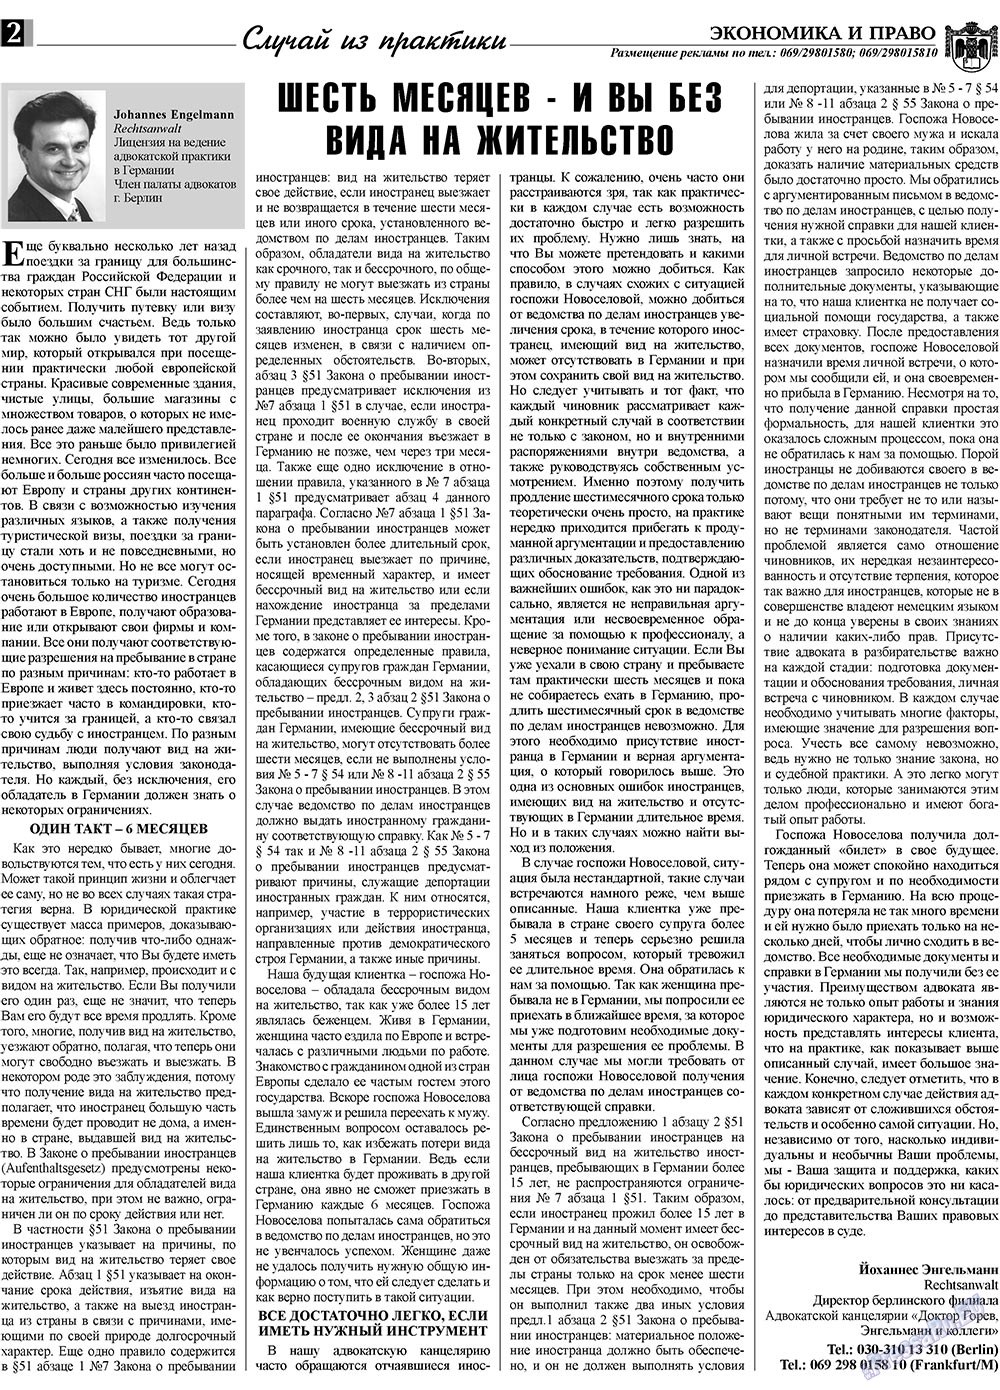 Экономика и право, газета. 2009 №10 стр.2